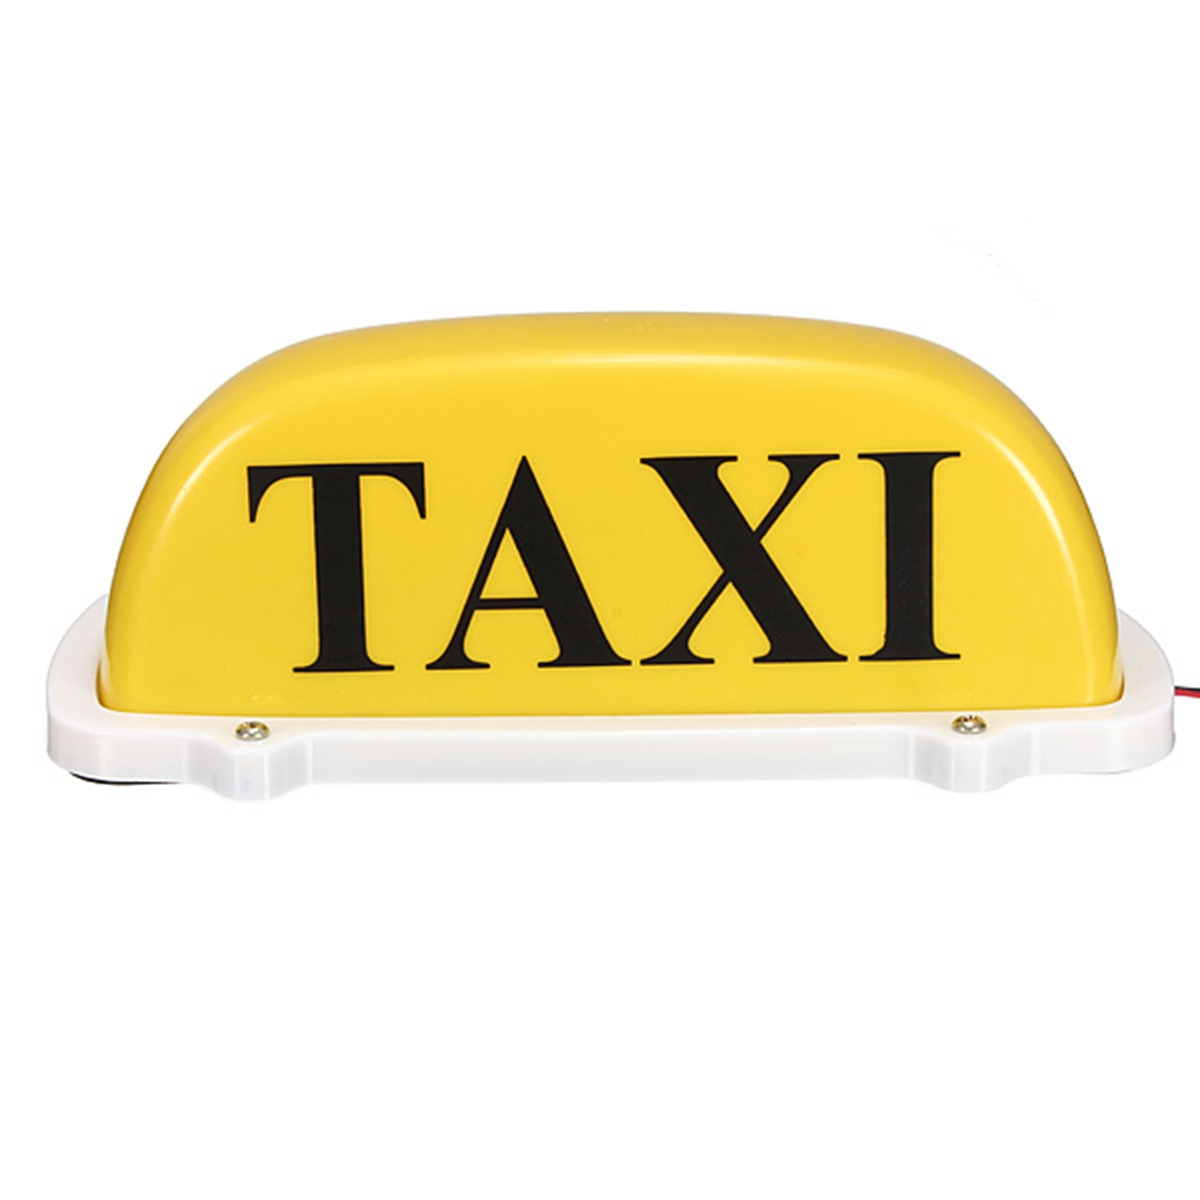 La cumbre del tejado del taxi del taxi de coches de dc12v firma la lámpara ligera talla grande amarilla magnética